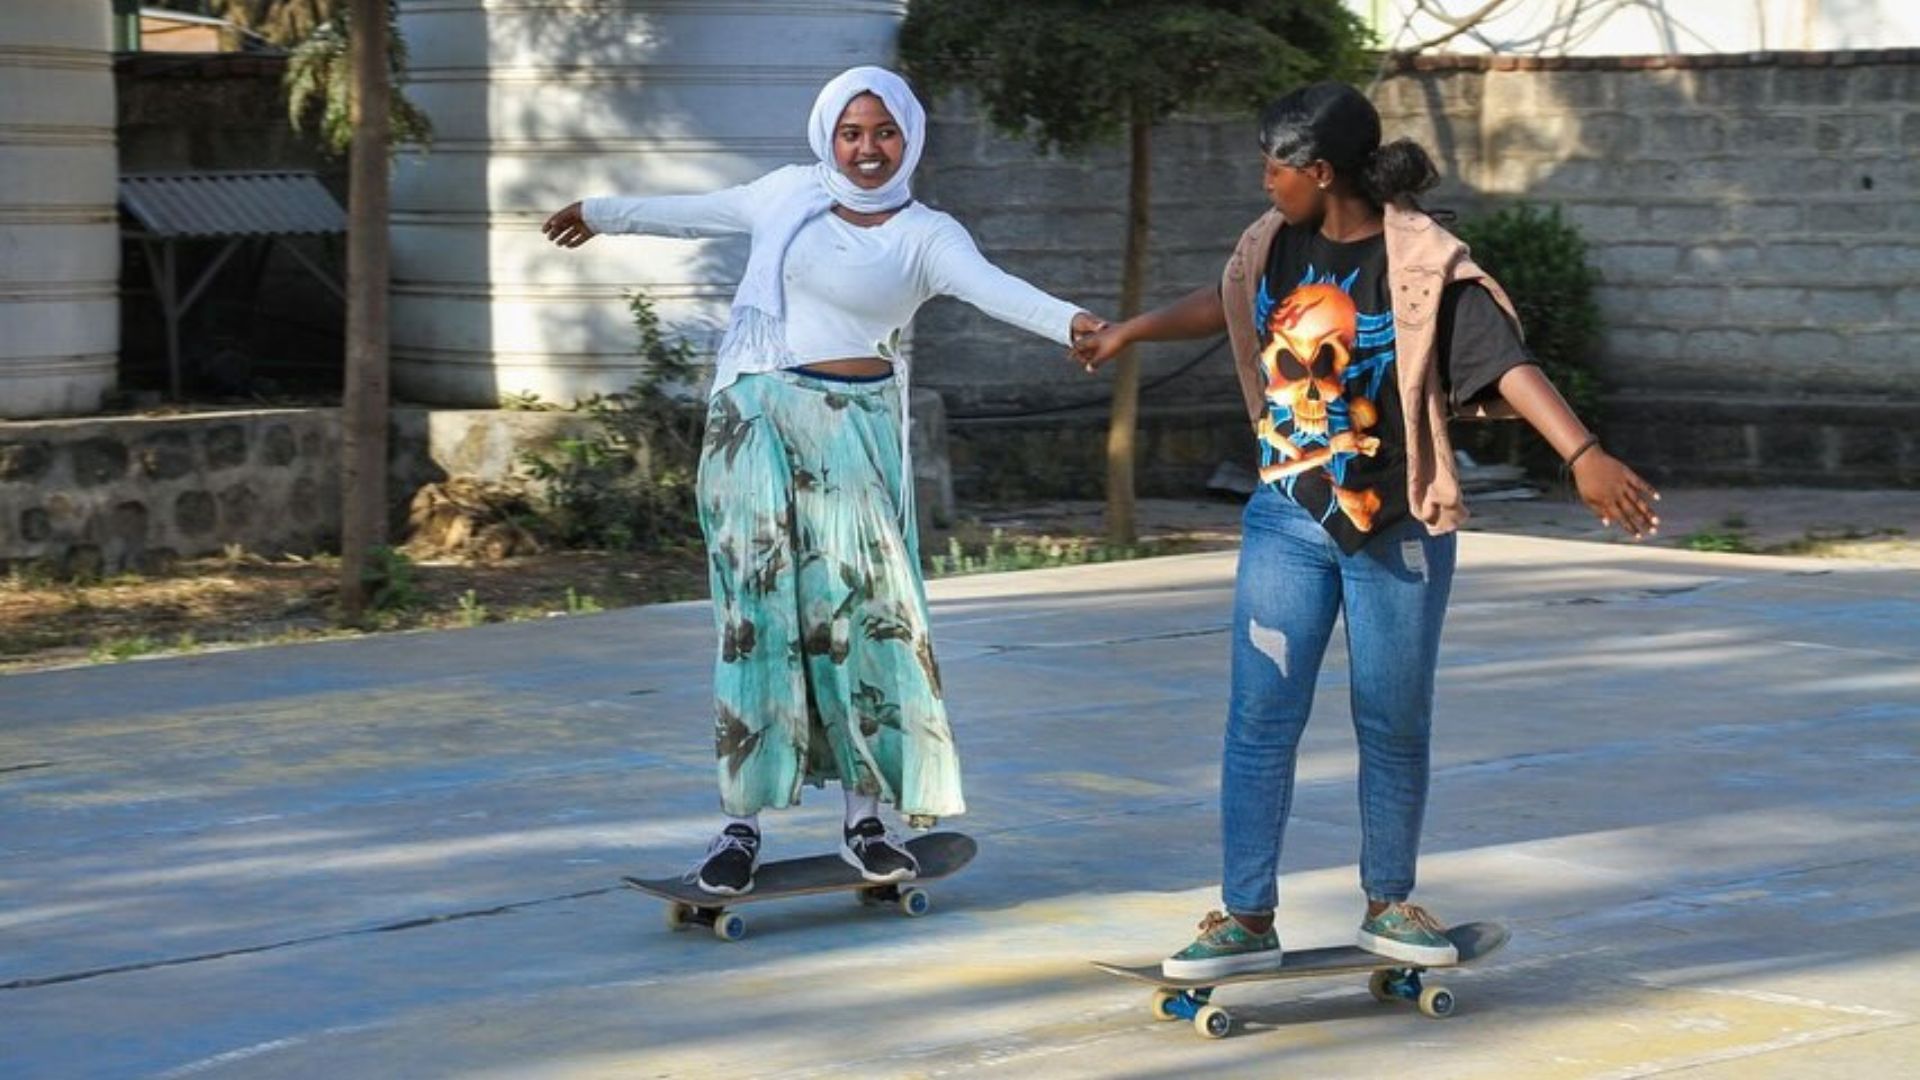 Libertà, emancipazione e sorellanza. Le ragazze sullo skateboard di Addis Abeba